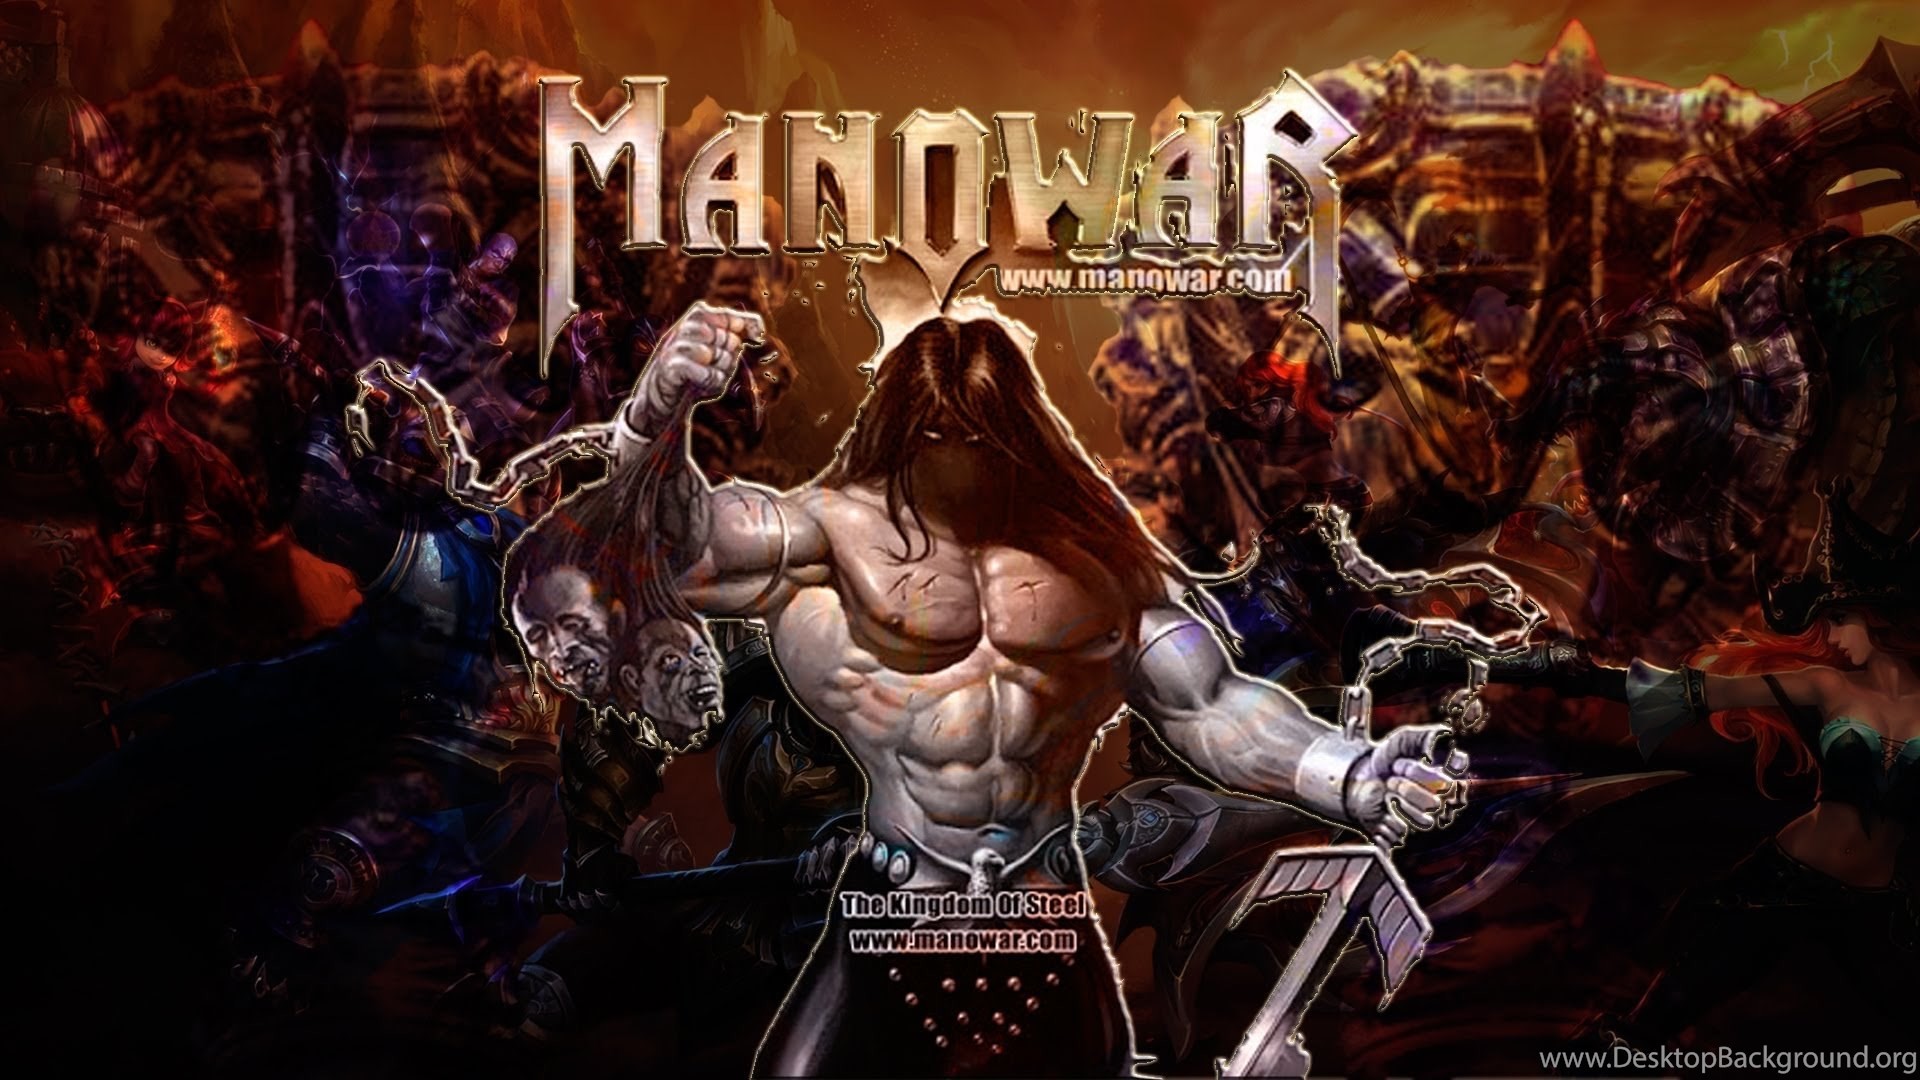 Manowar battle. Постеры группы Manowar. Обложки дисков Manowar. Группа Manowar обложки. Manowar обложки альбомов.